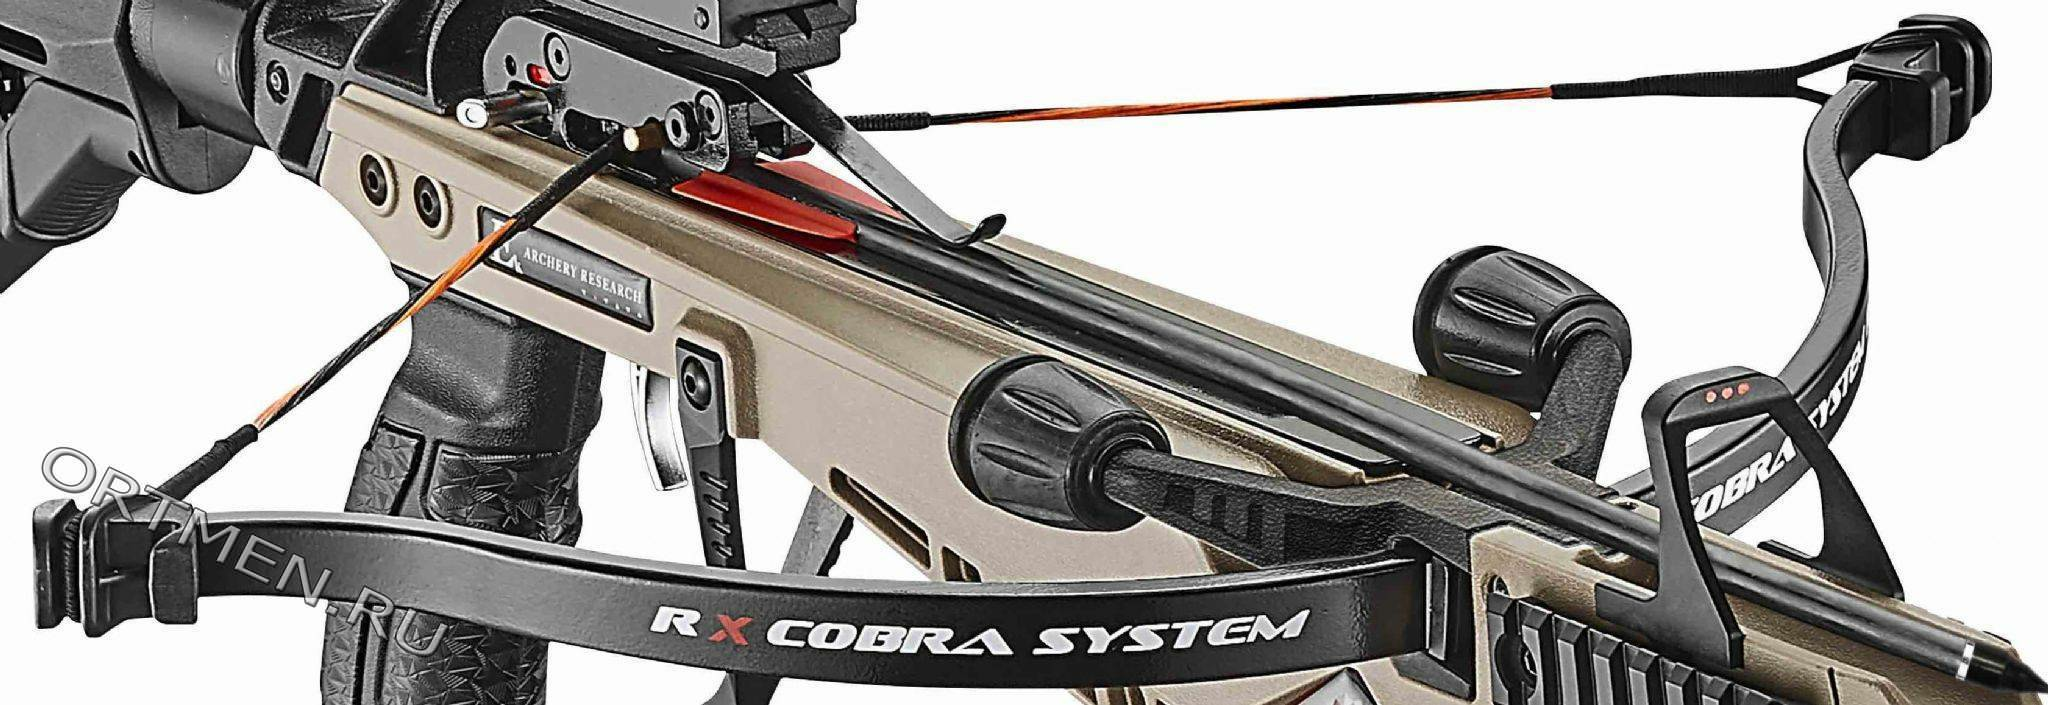 Cobra rx. Ek Cobra System r9. Ek Archery Cobra RX 130. Плечи для арбалета Ek Cobra System r9 130 lbs. Плечи Ek Cobra System r9 (RX).